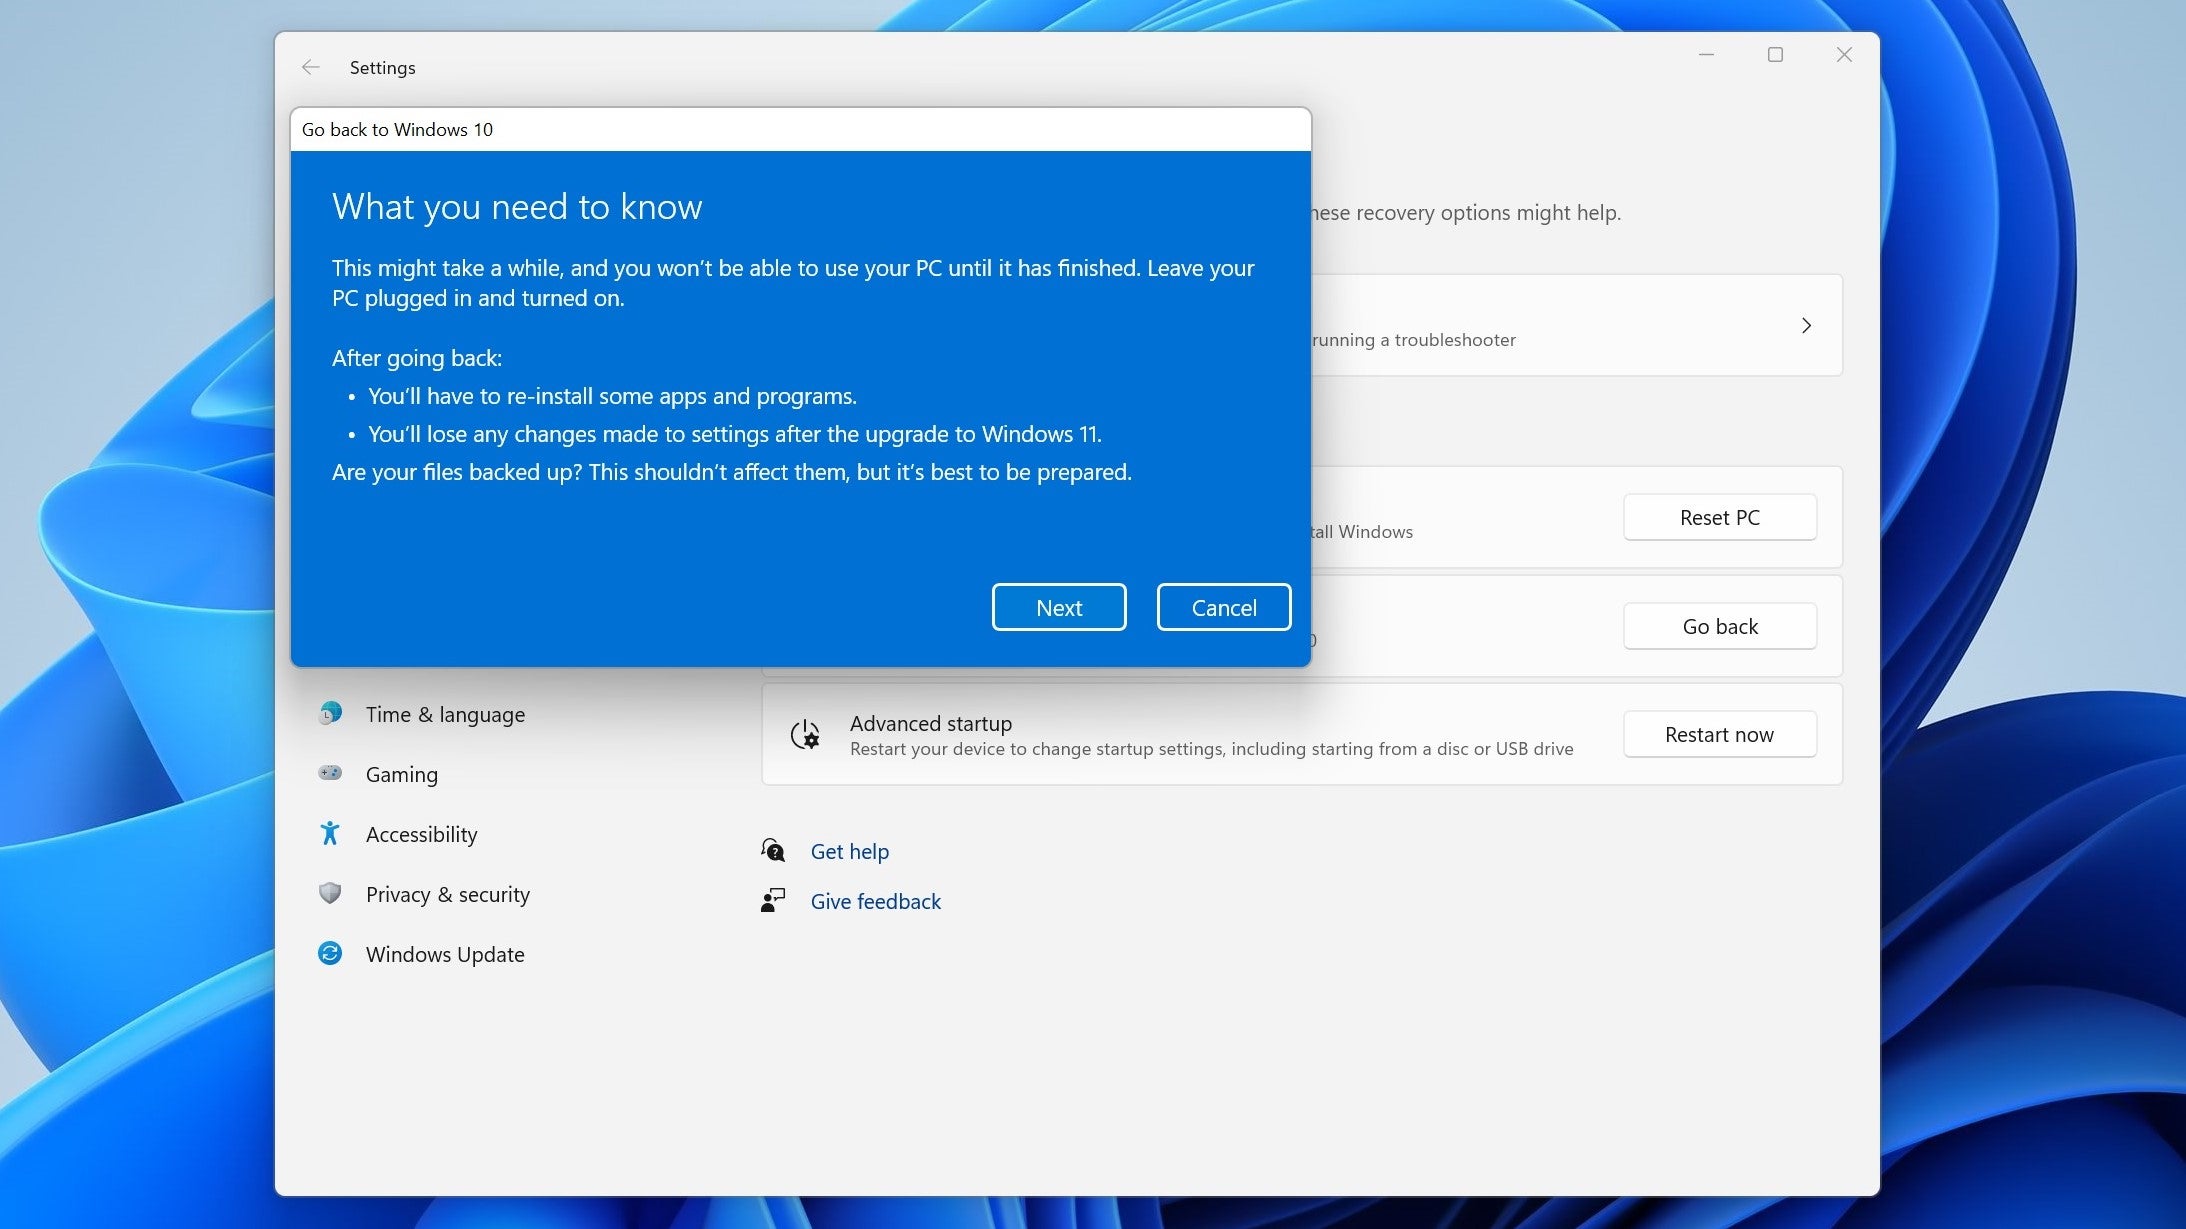 يشرح Windows 11 الخطوات المحتملة التي قد يحتاج المستخدمون إلى اتخاذها للاحتفاظ بملفاتهم عند إعادة تثبيت Windows 10.